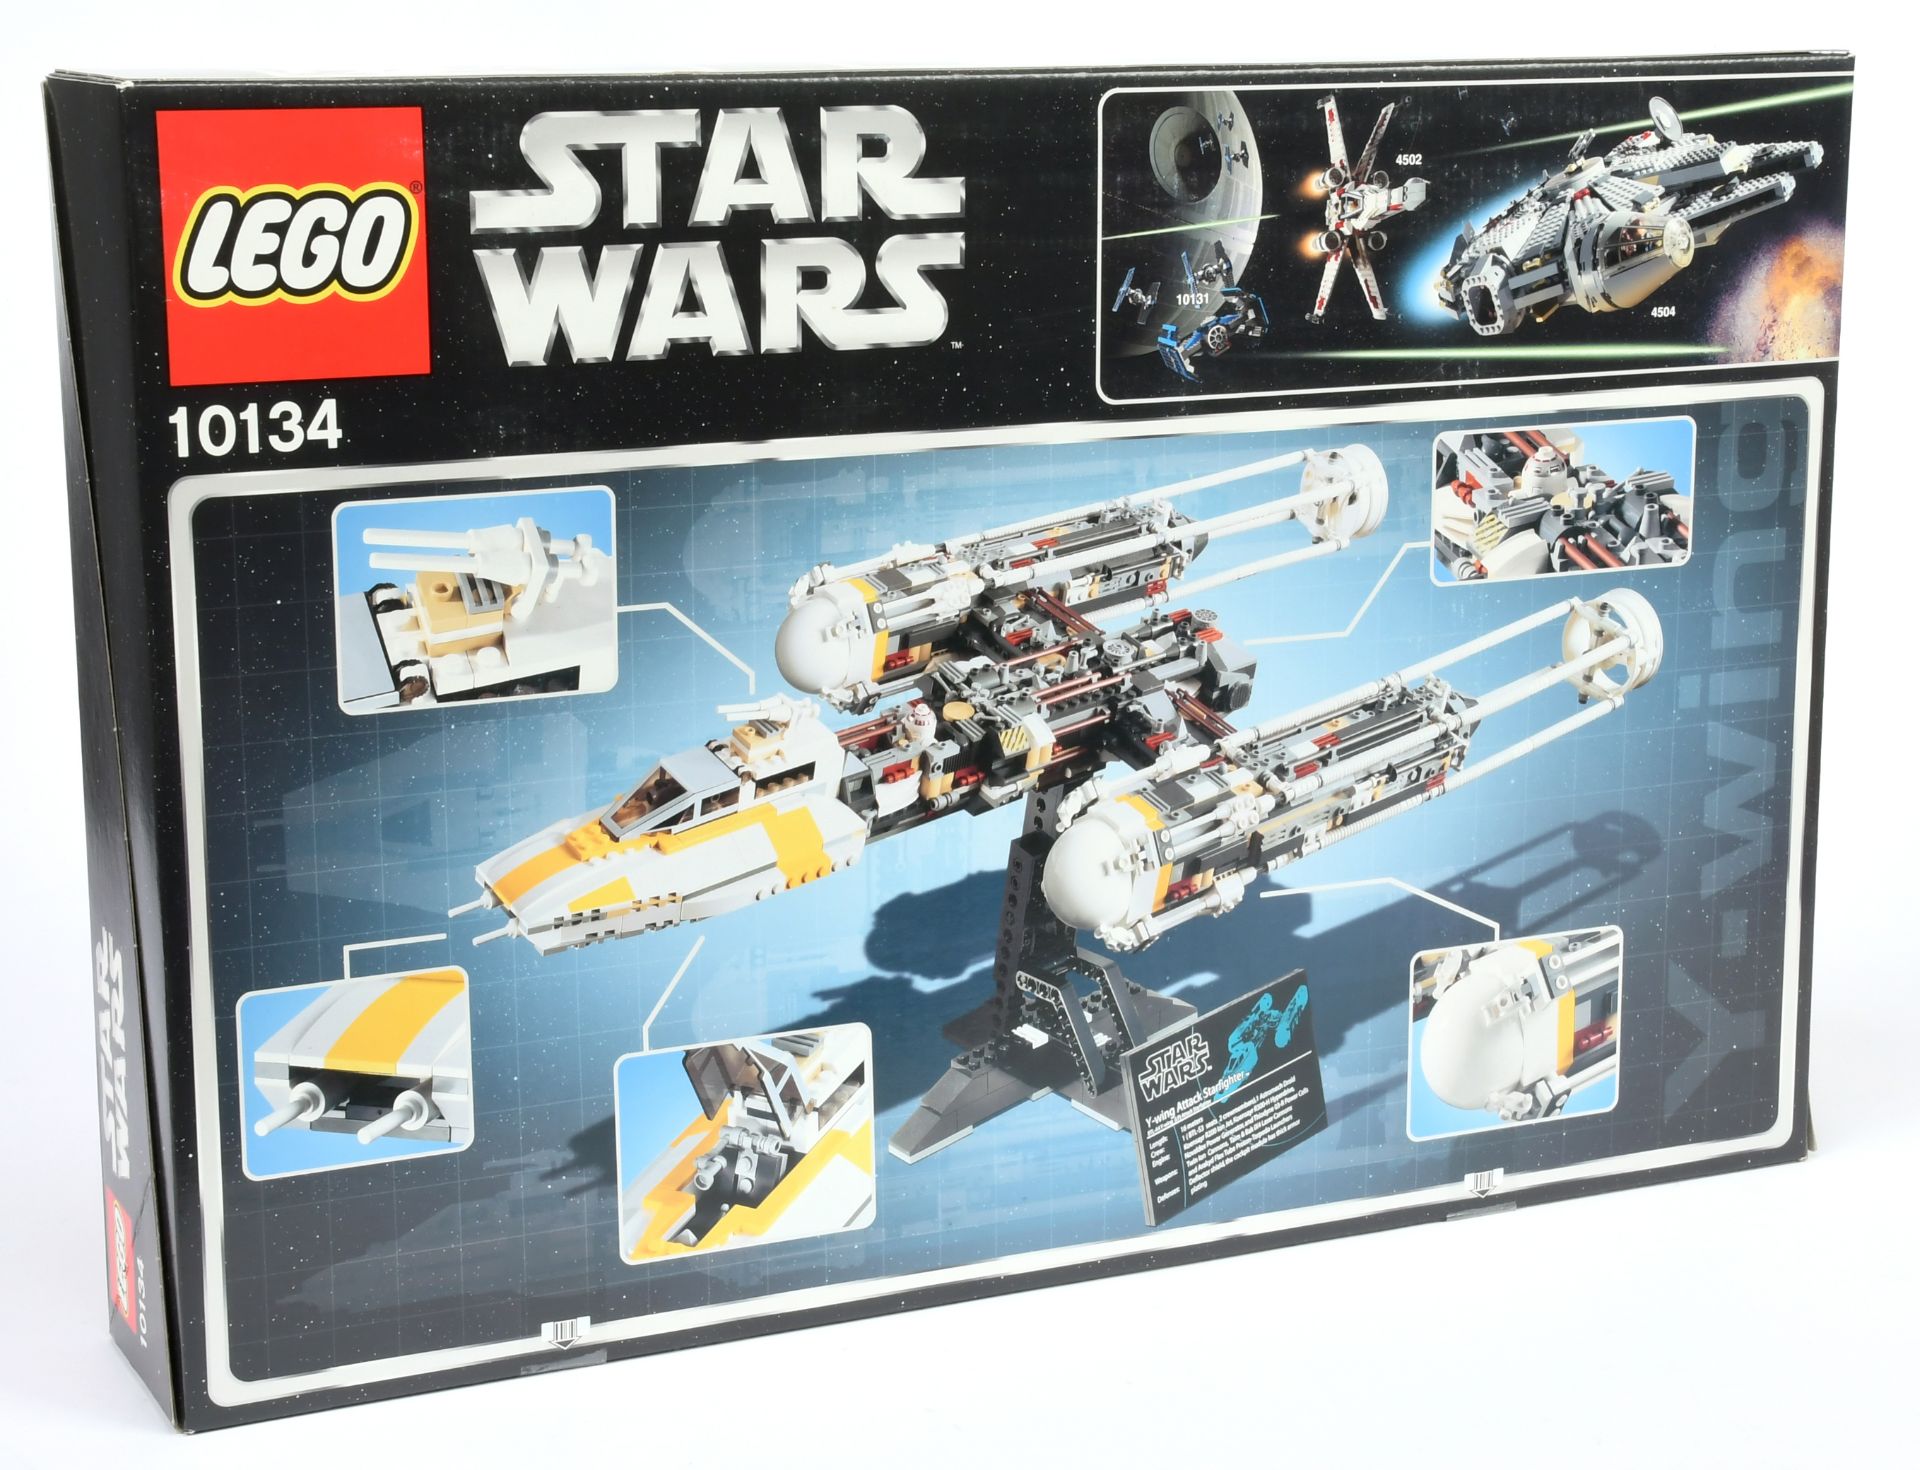 Lego Star Wars 10134 Y-Wing Attack Starfighter - Star Wars Original Trilogy Edition - 2004 Issue,... - Bild 2 aus 2